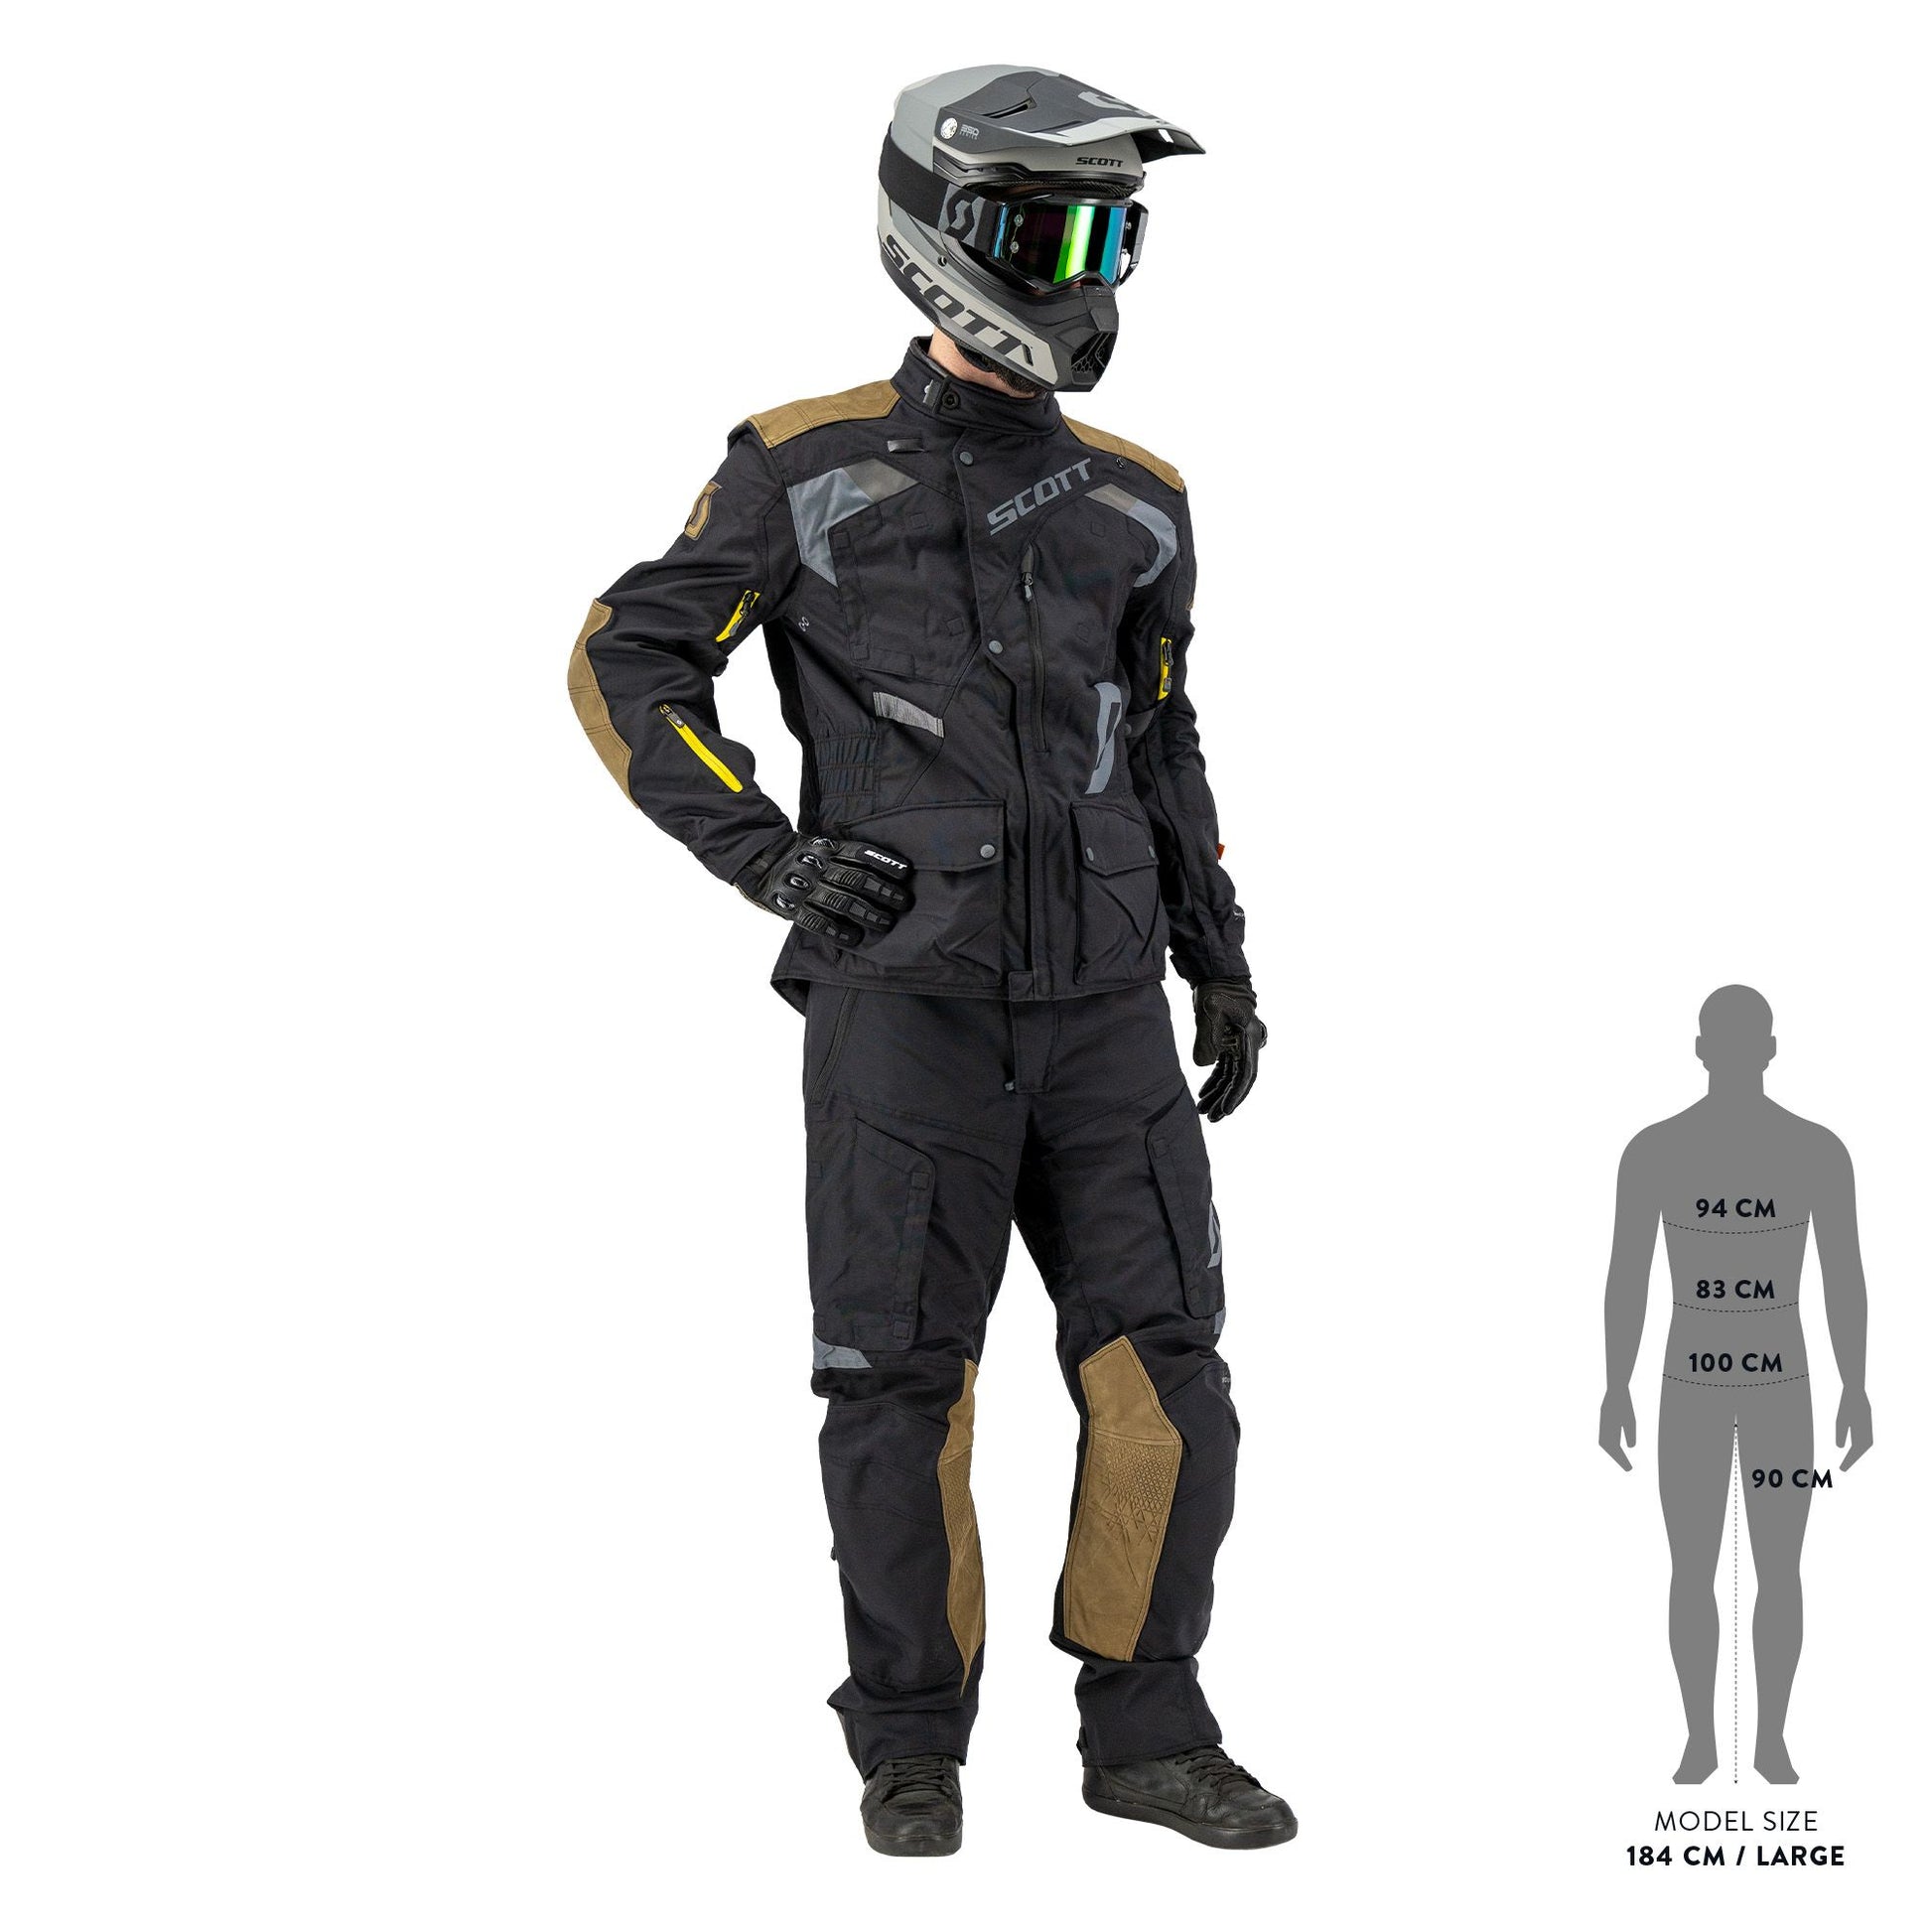 L'uomo in una moto con casco e guanti è un indumento protettivo